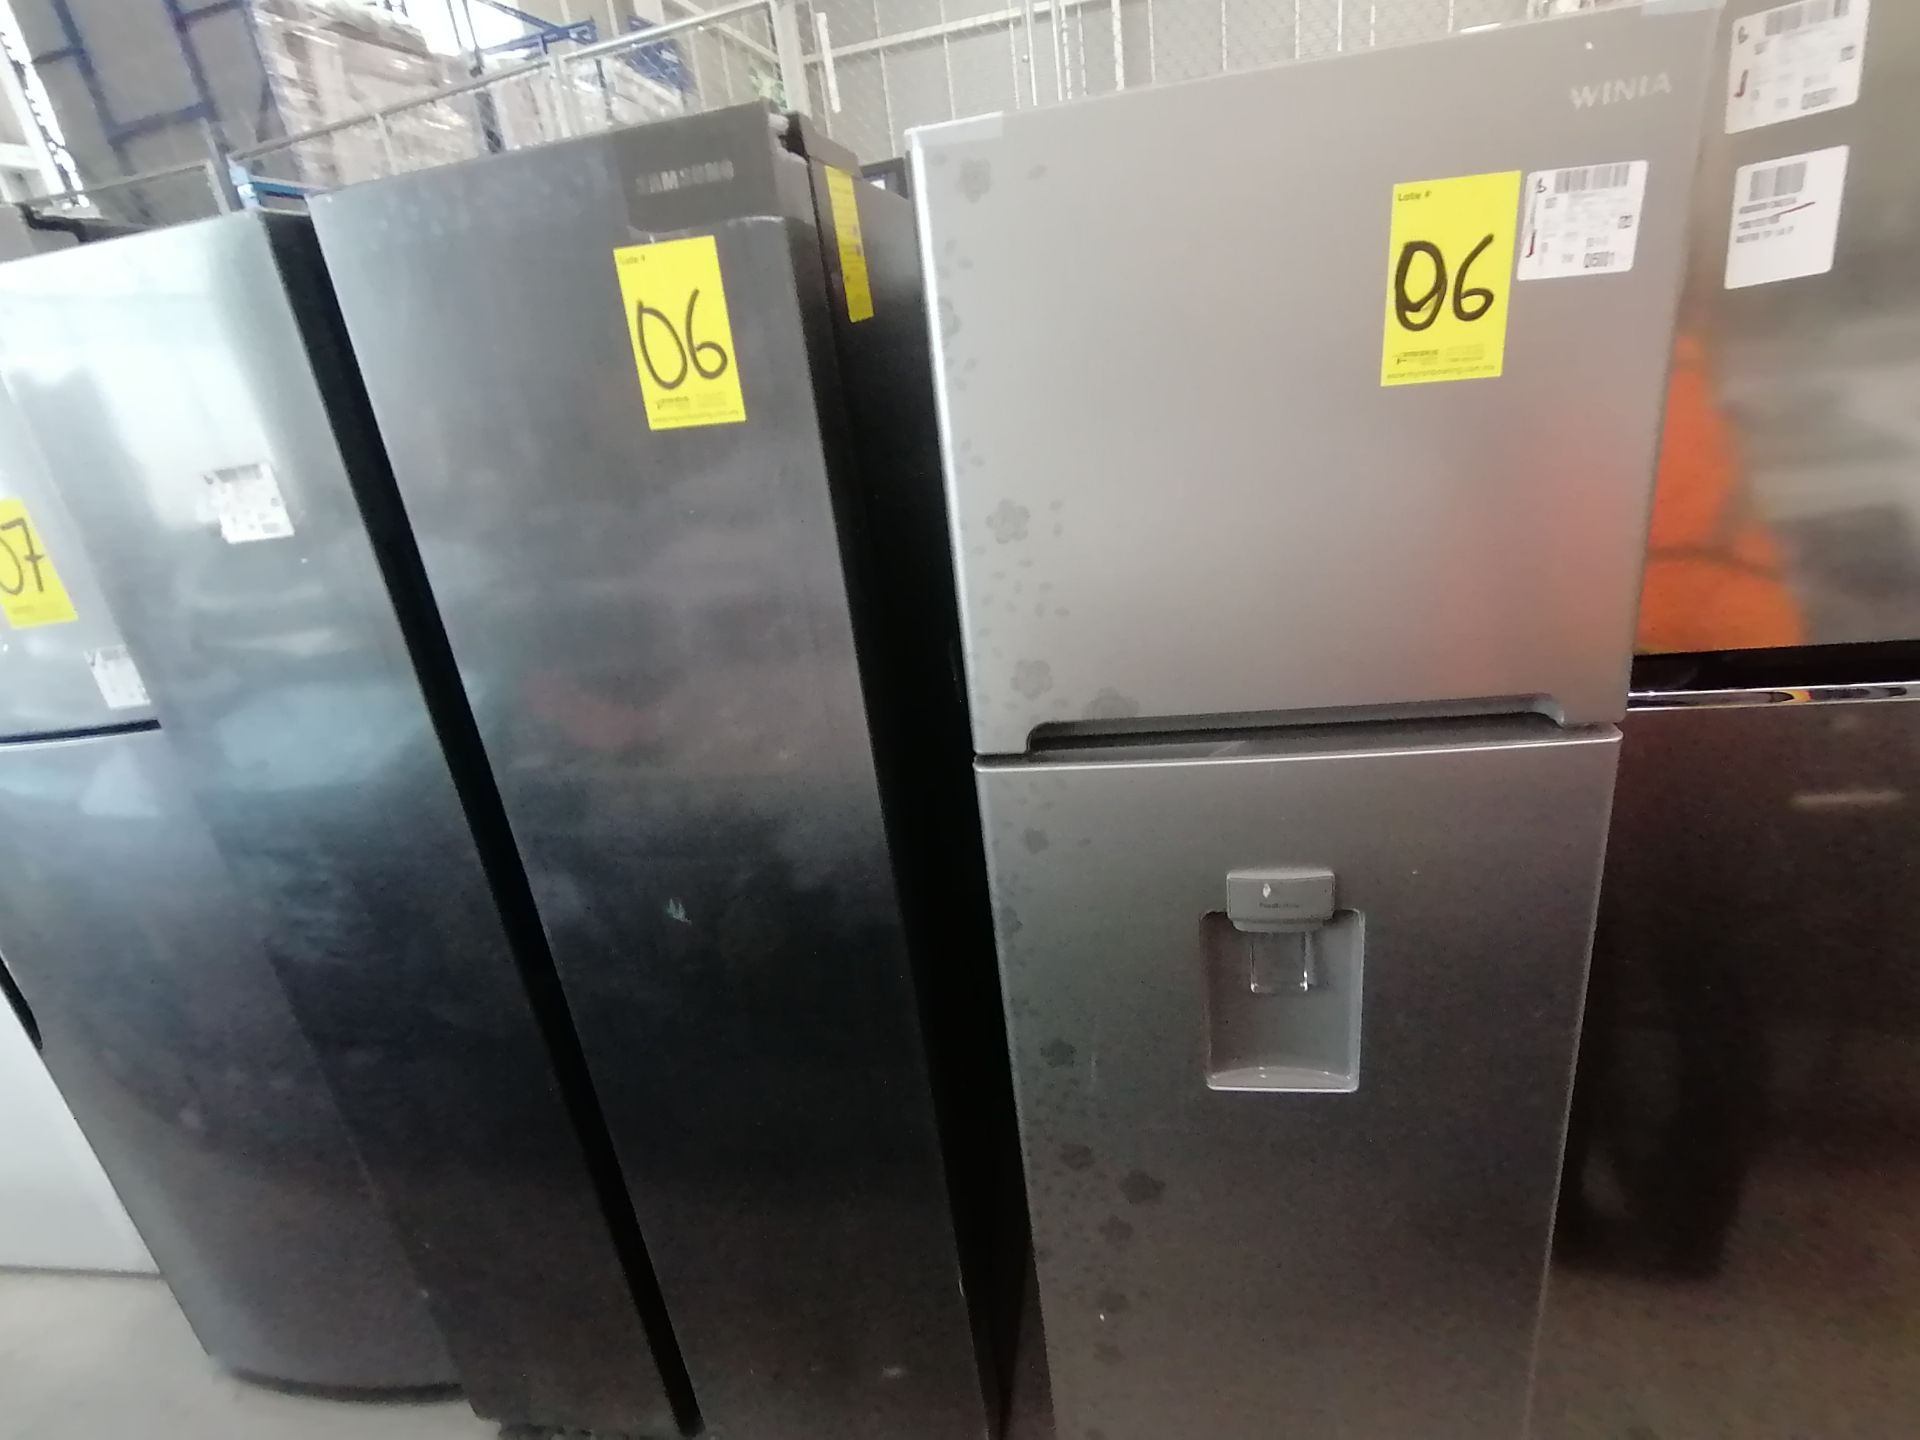 1 Refrigerador Marca Samsung, Modelo RS28T5B00B1, Serie 0B2V4BBT300531L, Color Gris, Golpeado, Favo - Image 3 of 17